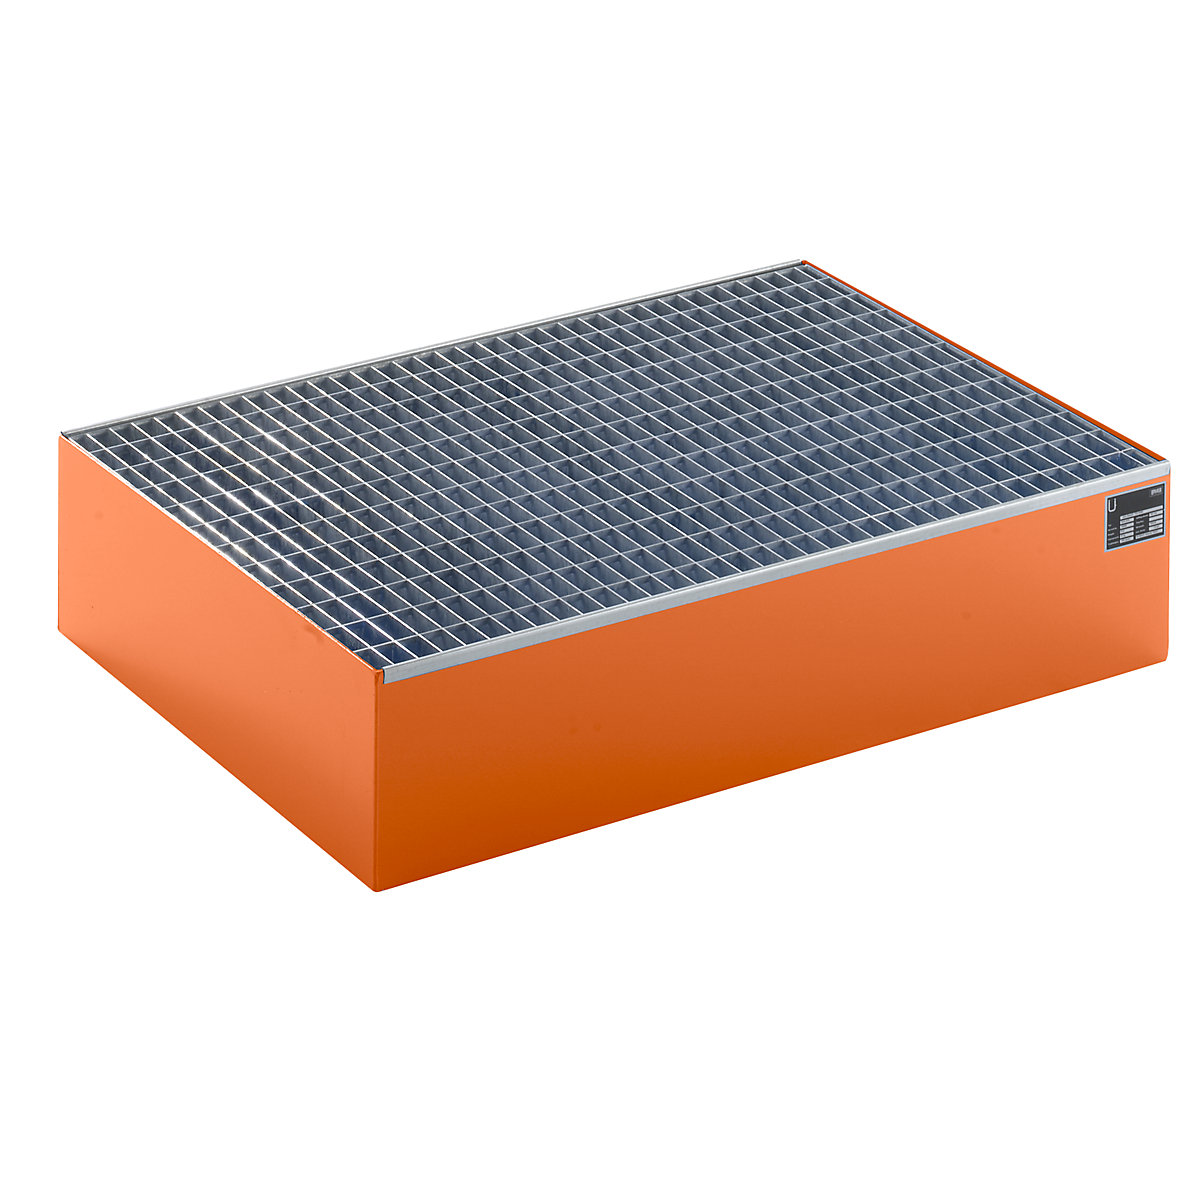 Paletten-Auffangwanne, LxBxH 1200 x 800 x 260 mm, orange RAL 2000, mit Gitterrost